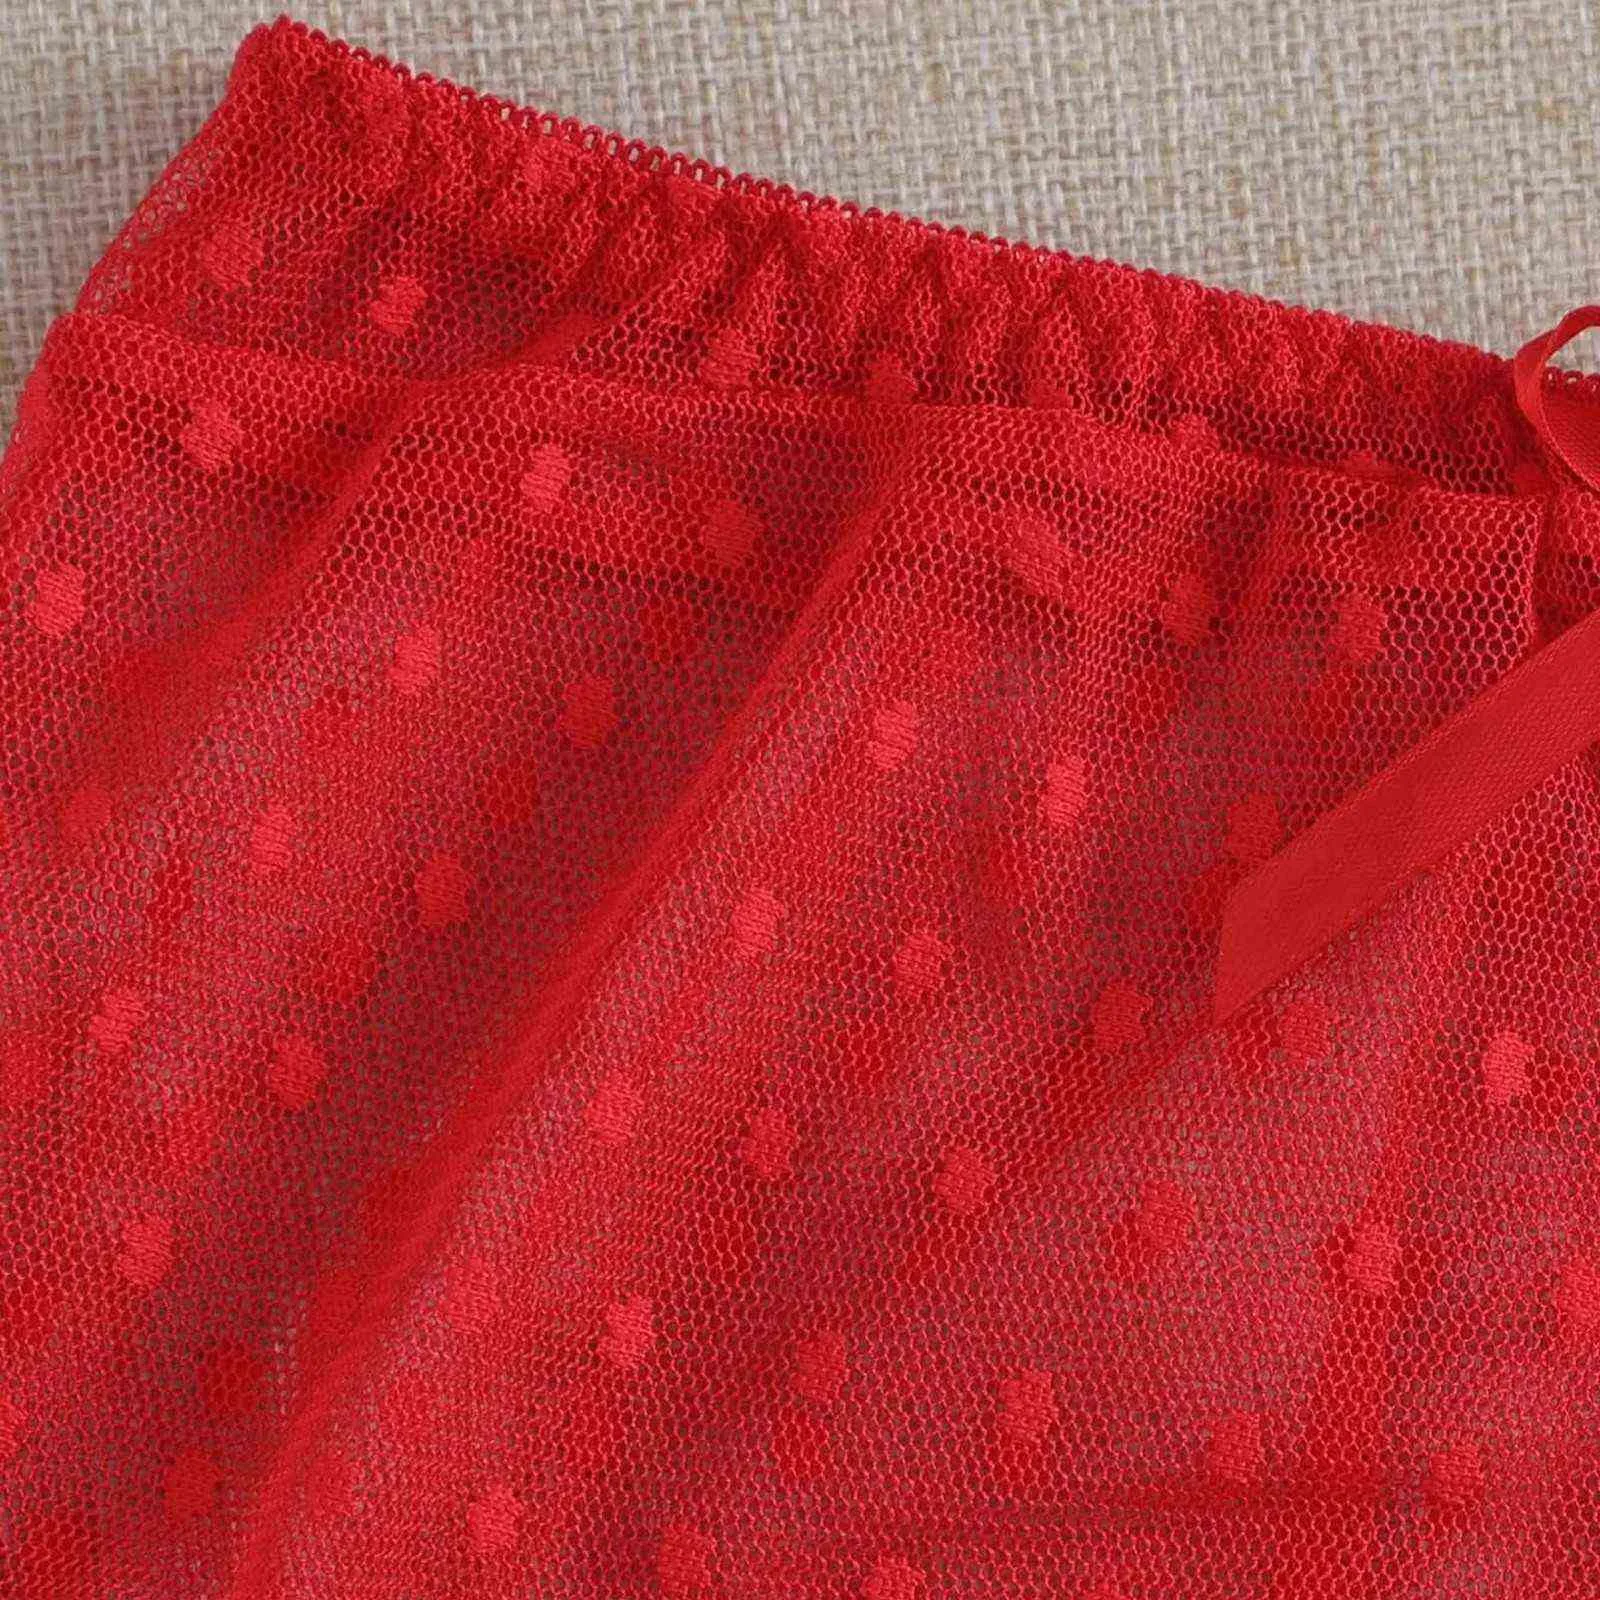 Женщины спать носить сексуальное женское бельё кружево сетки Camisole сплошные цвета шорты набор пижамы высокого качества женщины сексуальная одежда Q0706